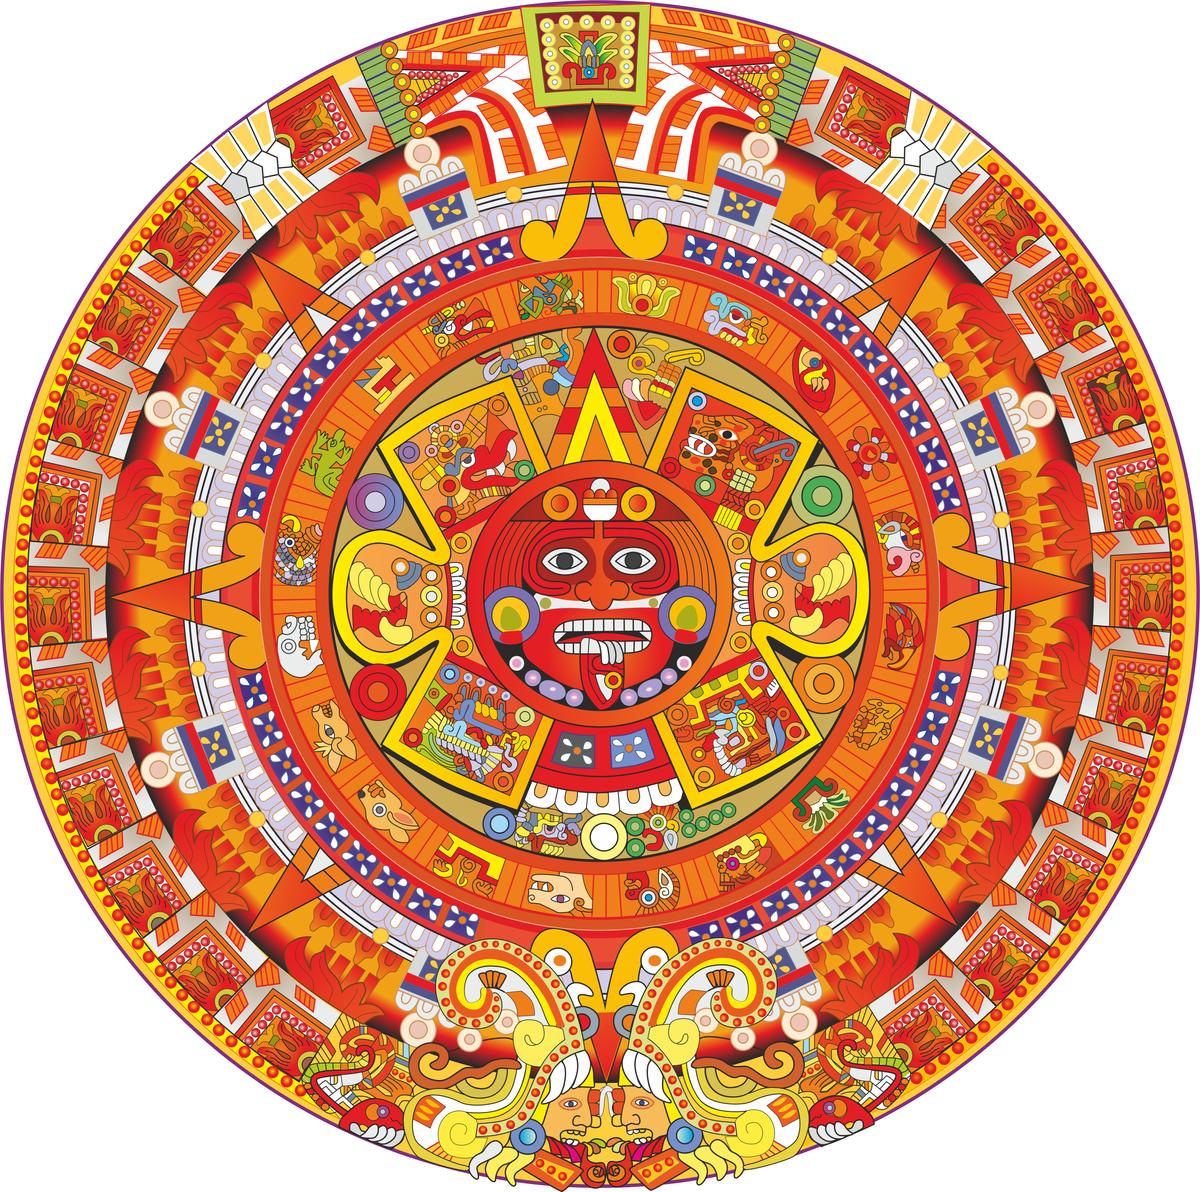 The Mayan calendar. (RoseGarden/Shutterstock)